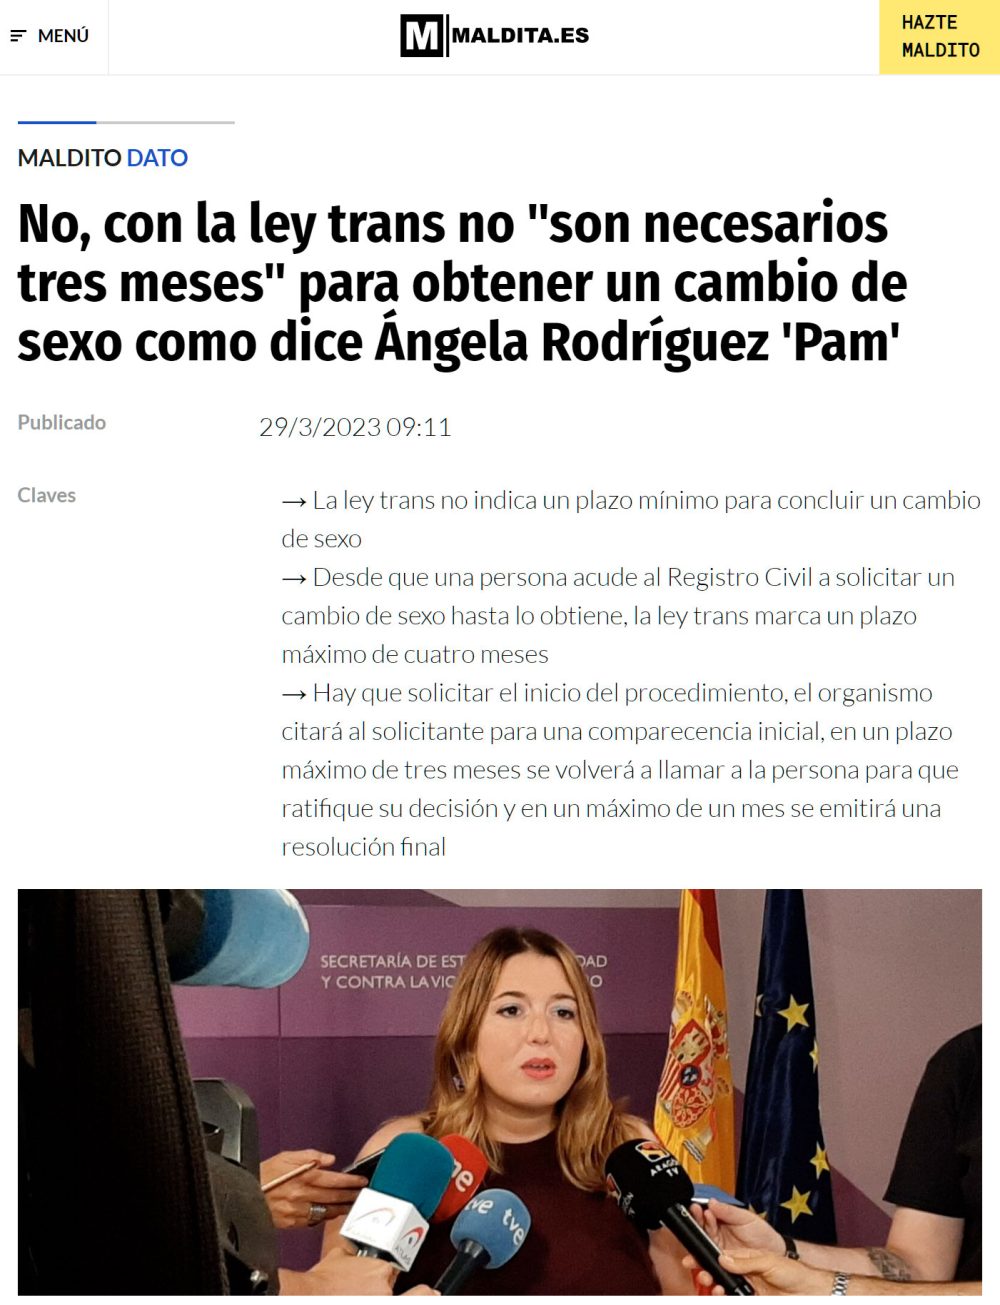 BREAKING NEWS: Ángela Rodríguez PAM no sabe cómo funciona su propia ley